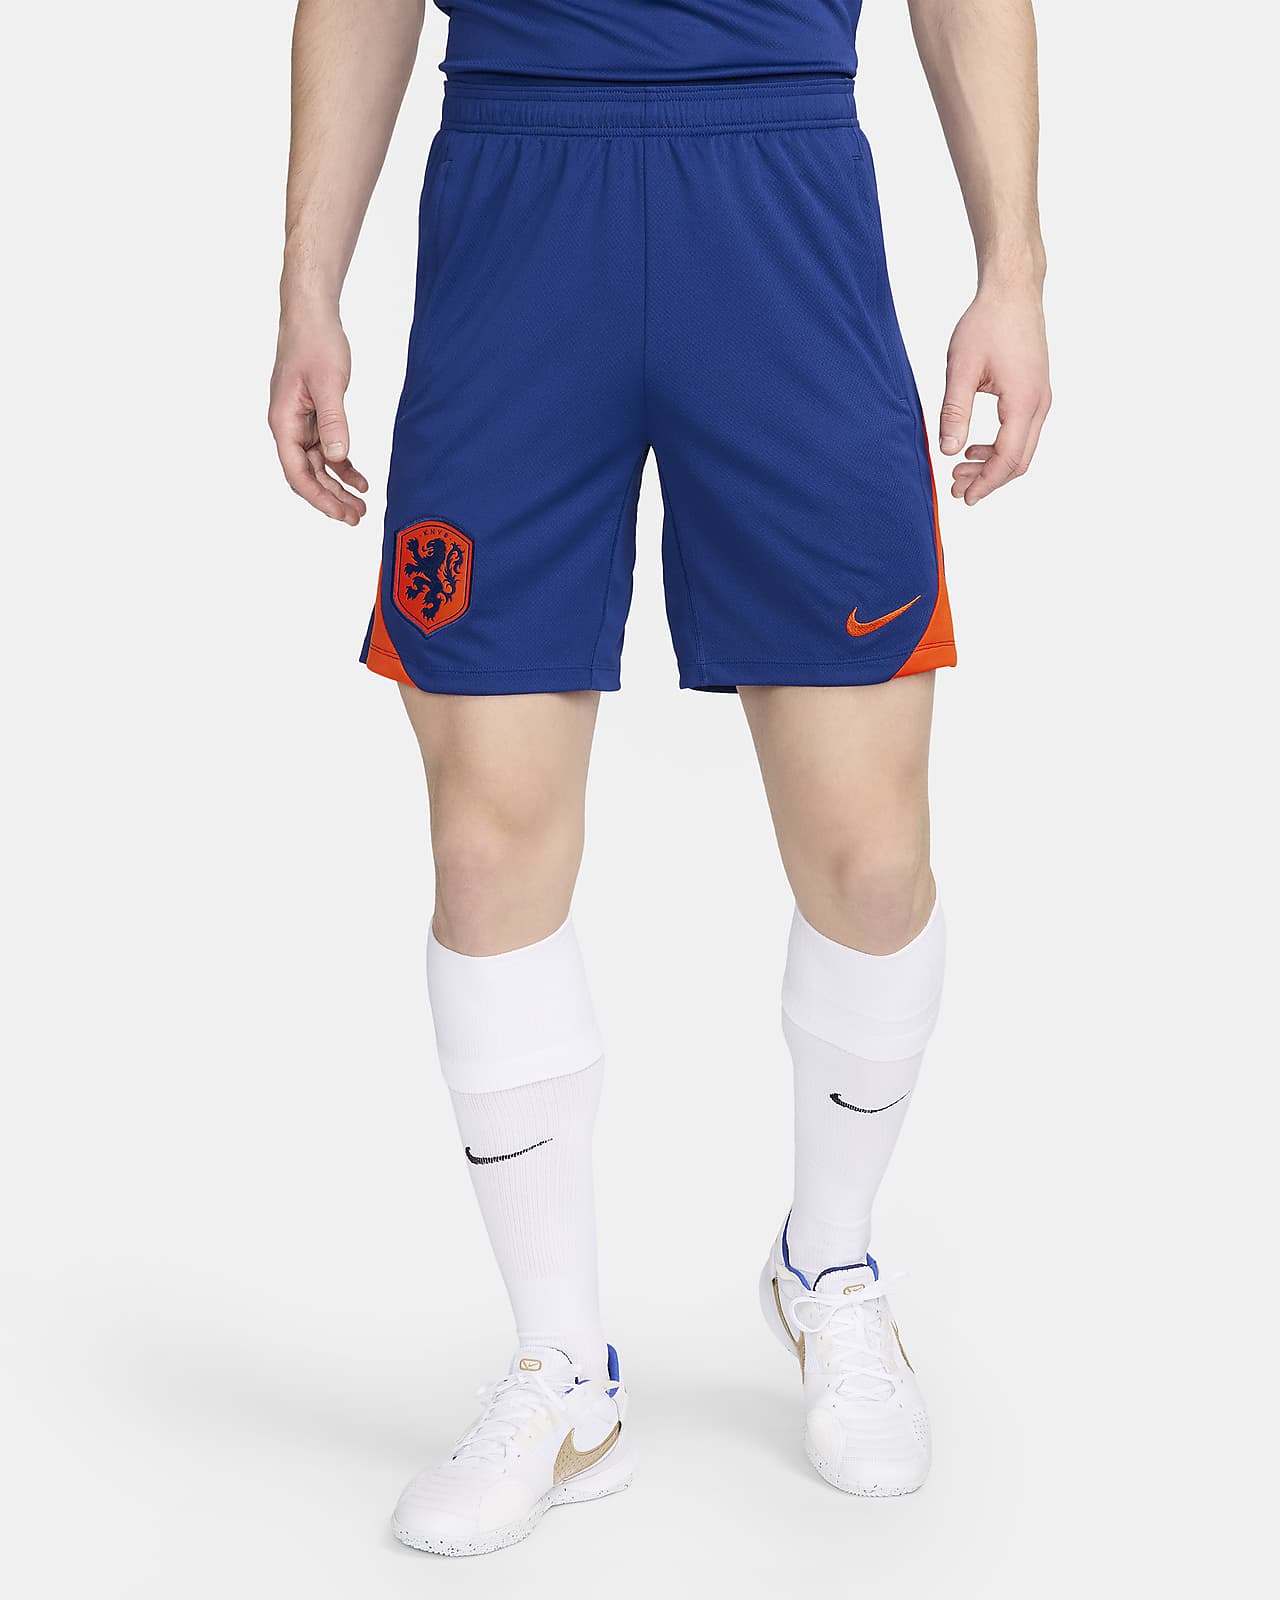 Nederland Strike Nike Dri-FIT strikket fotballshorts til herre